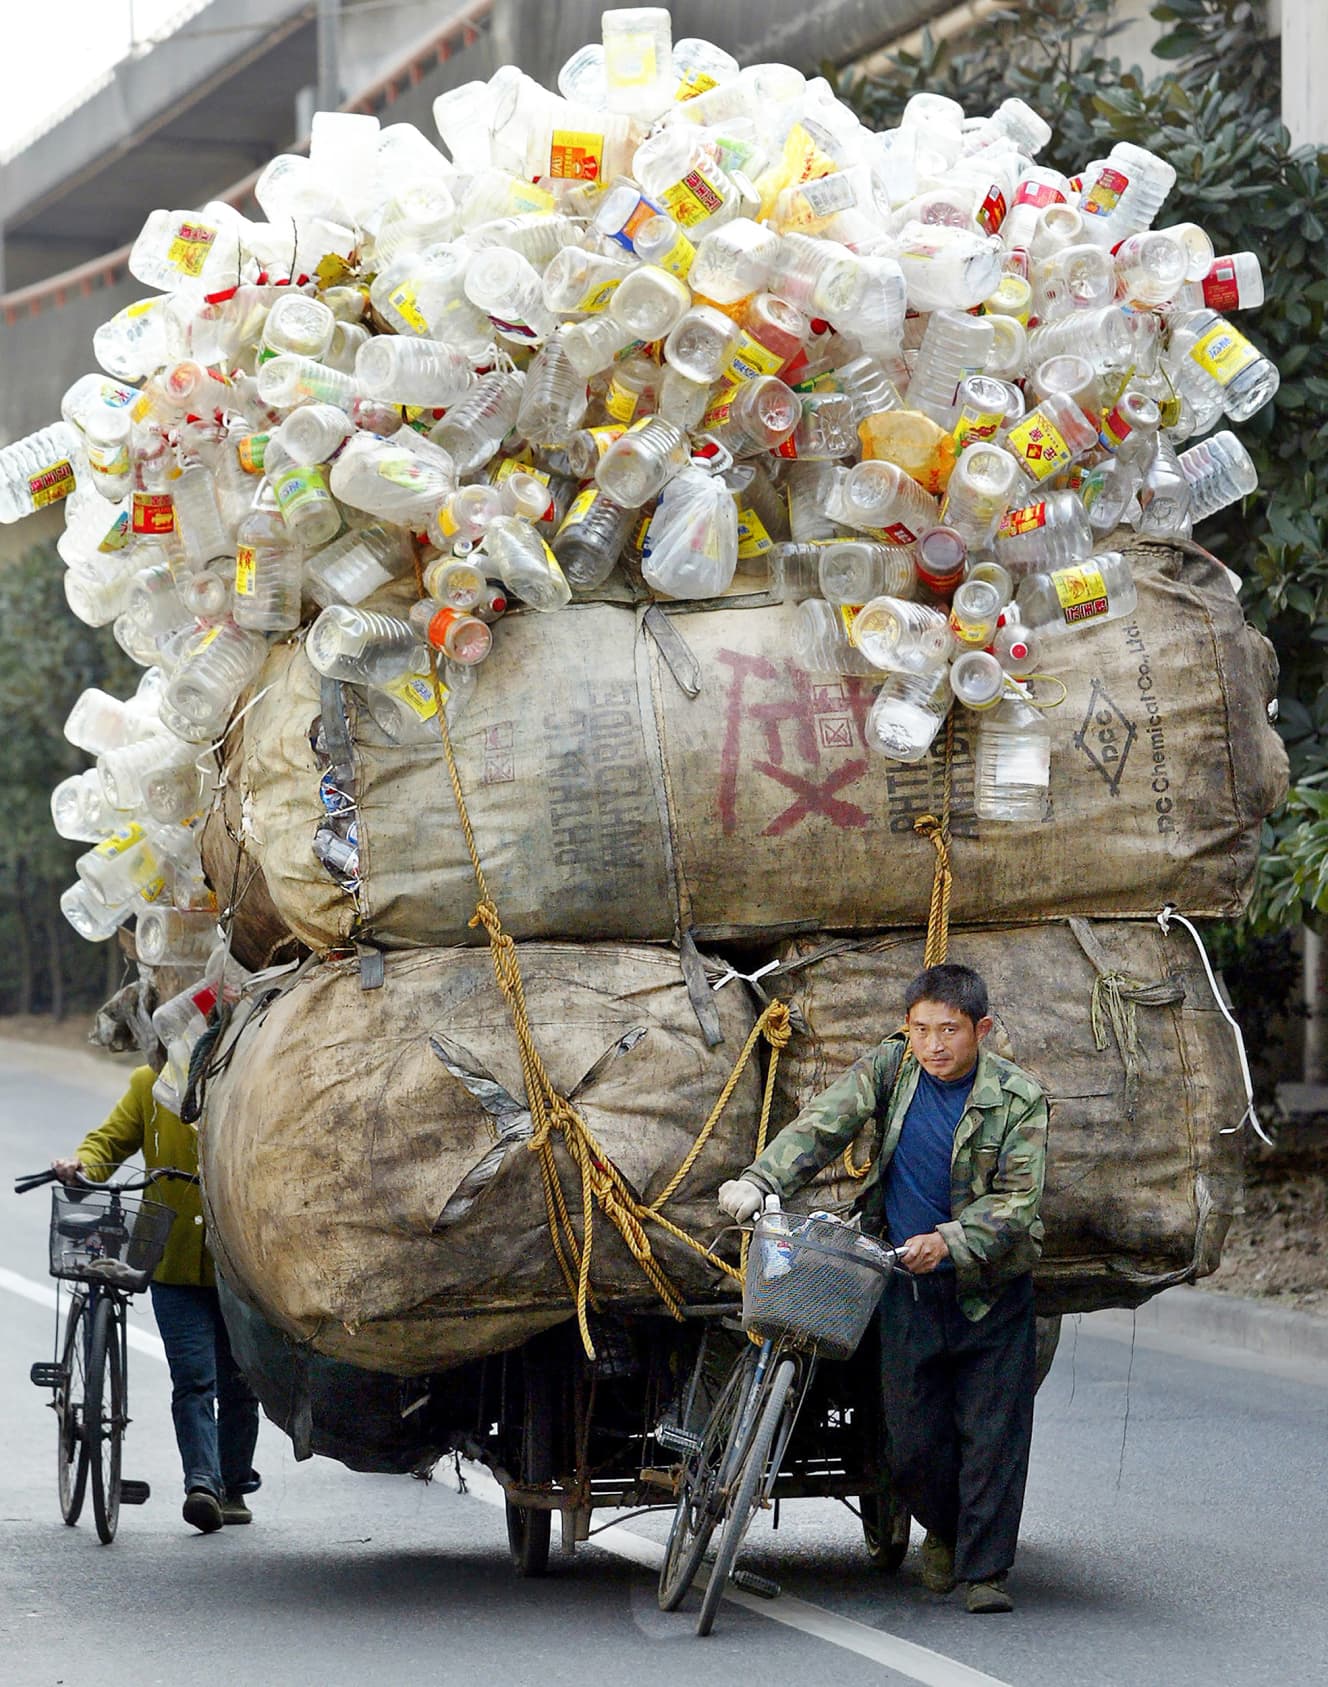 上海の路上で、大量のペットボトルと巨大なズダ袋を載せた荷台を引く中古の自転車と男性